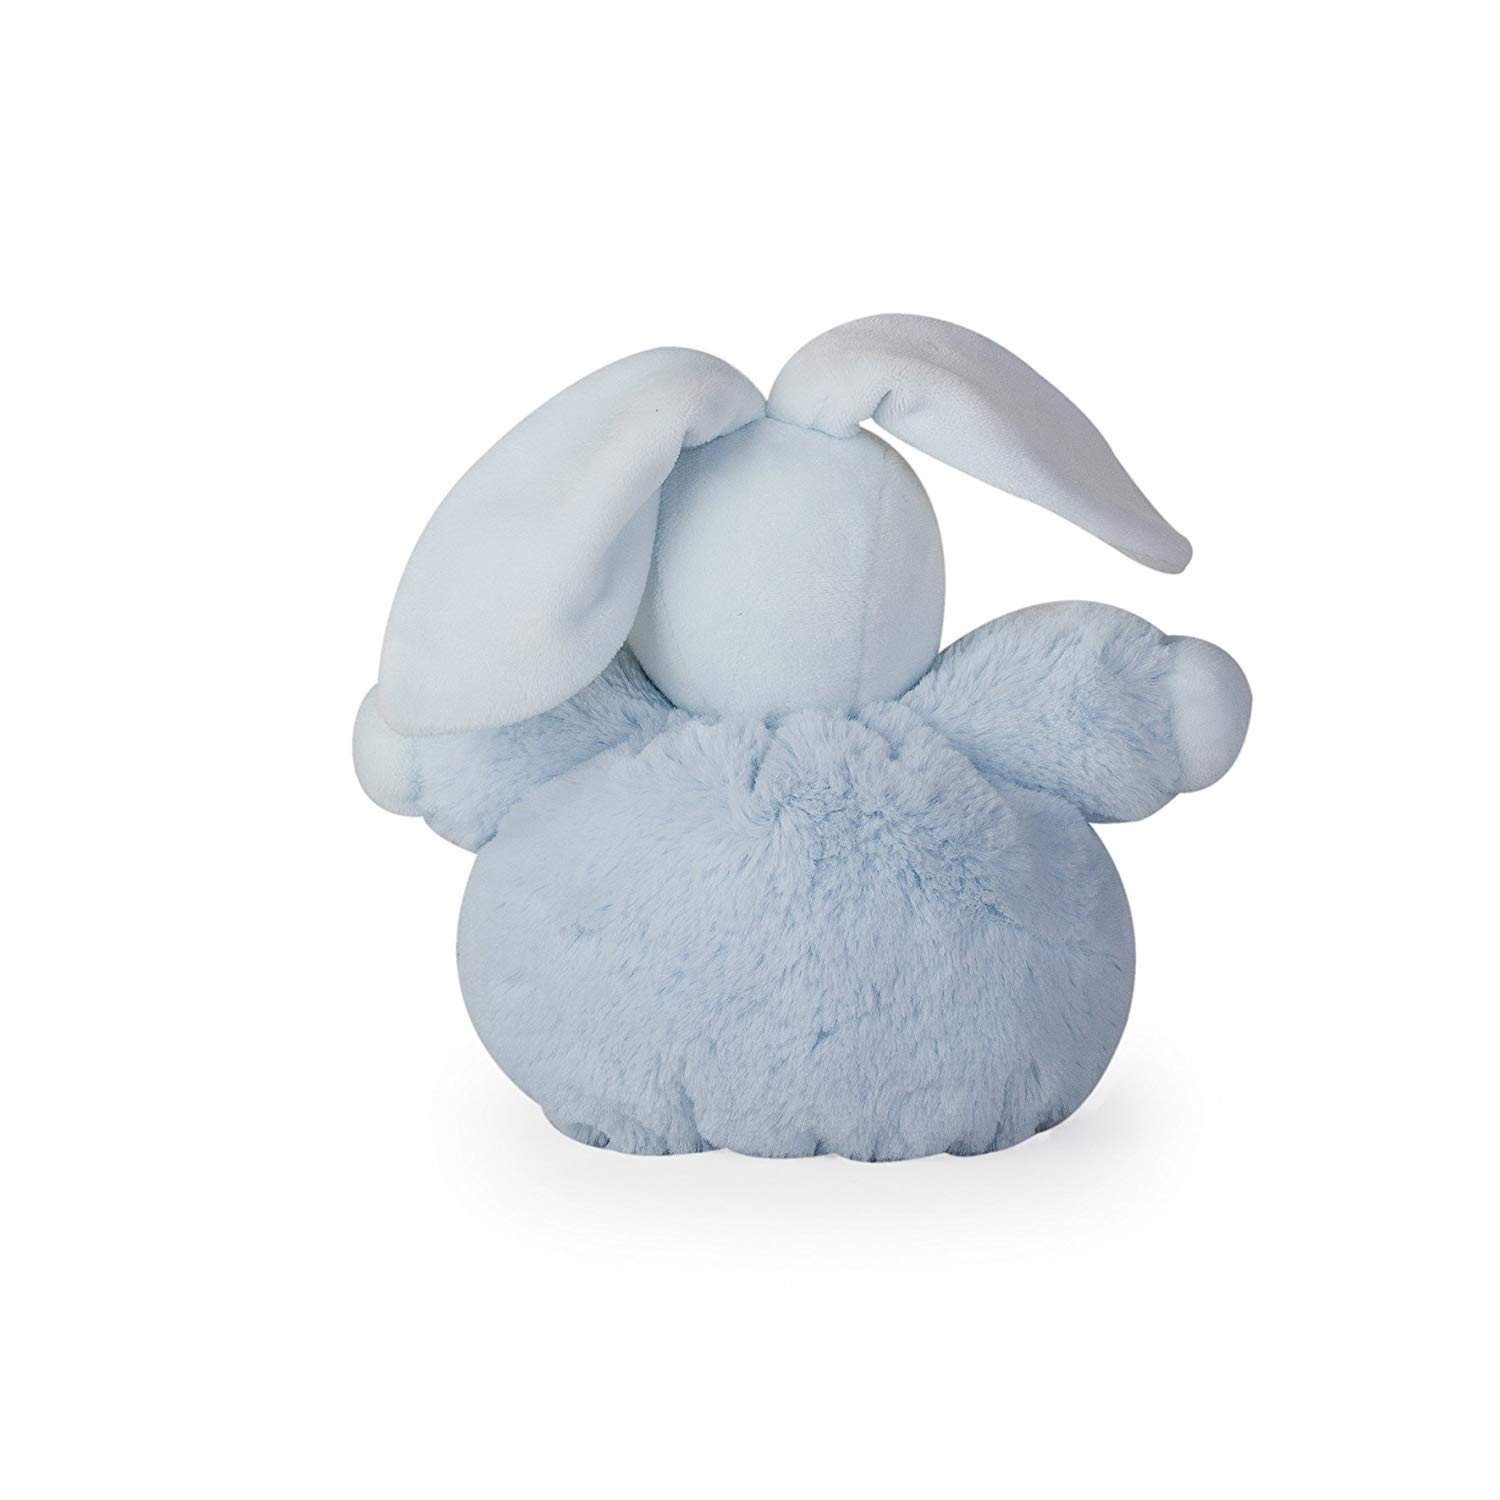 Мягкая игрушка из серии Жемчуг - Заяц маленький, голубой, 18 см.  